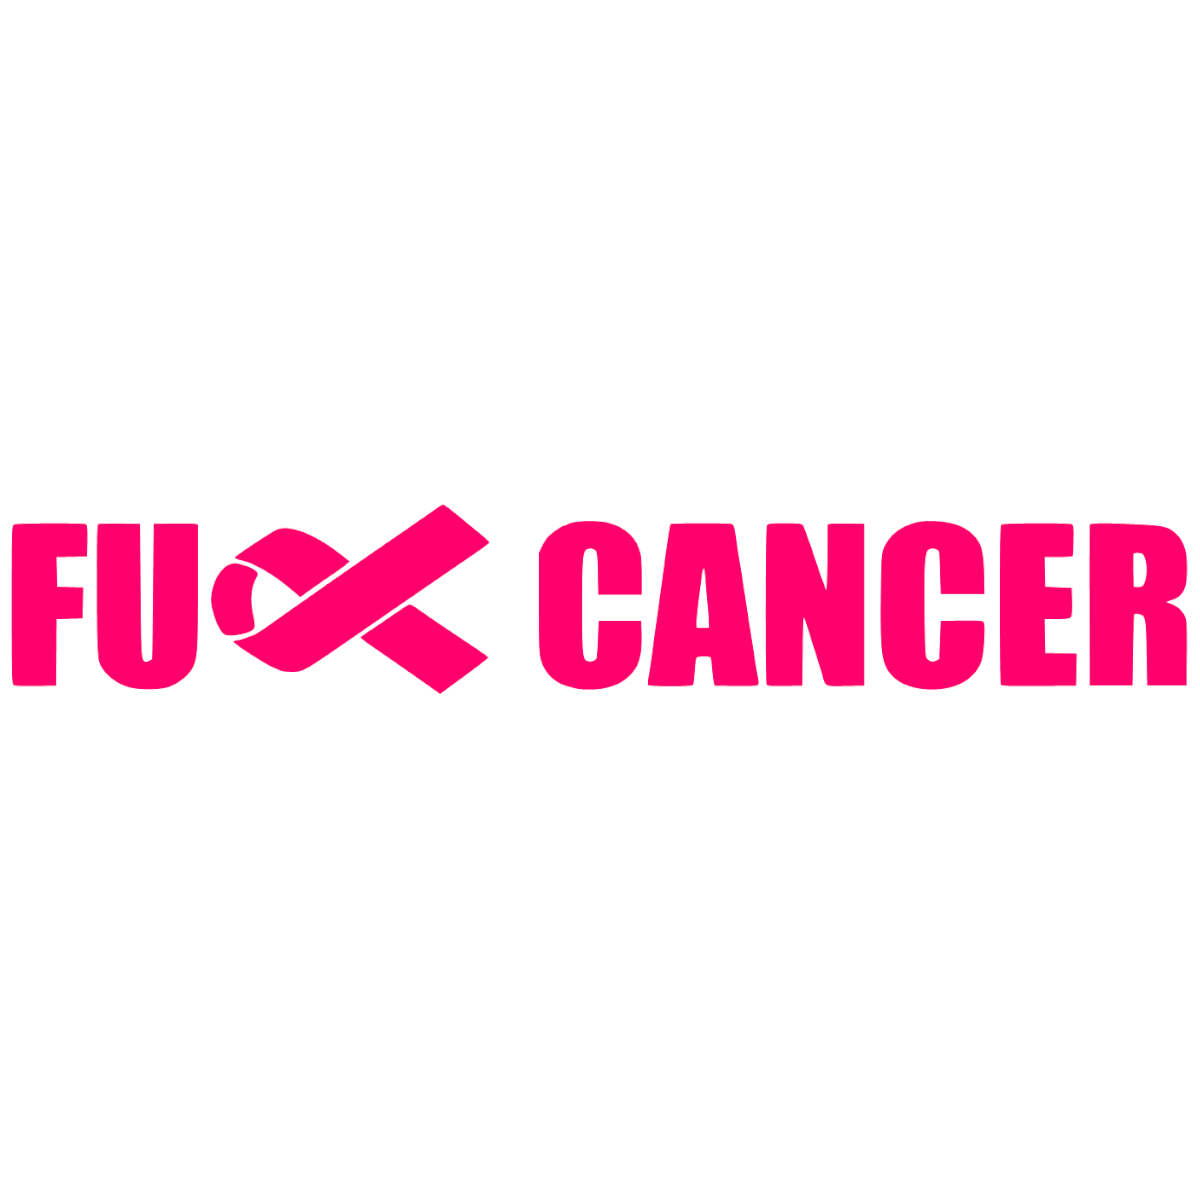 FUCK CANCER Dekal #2